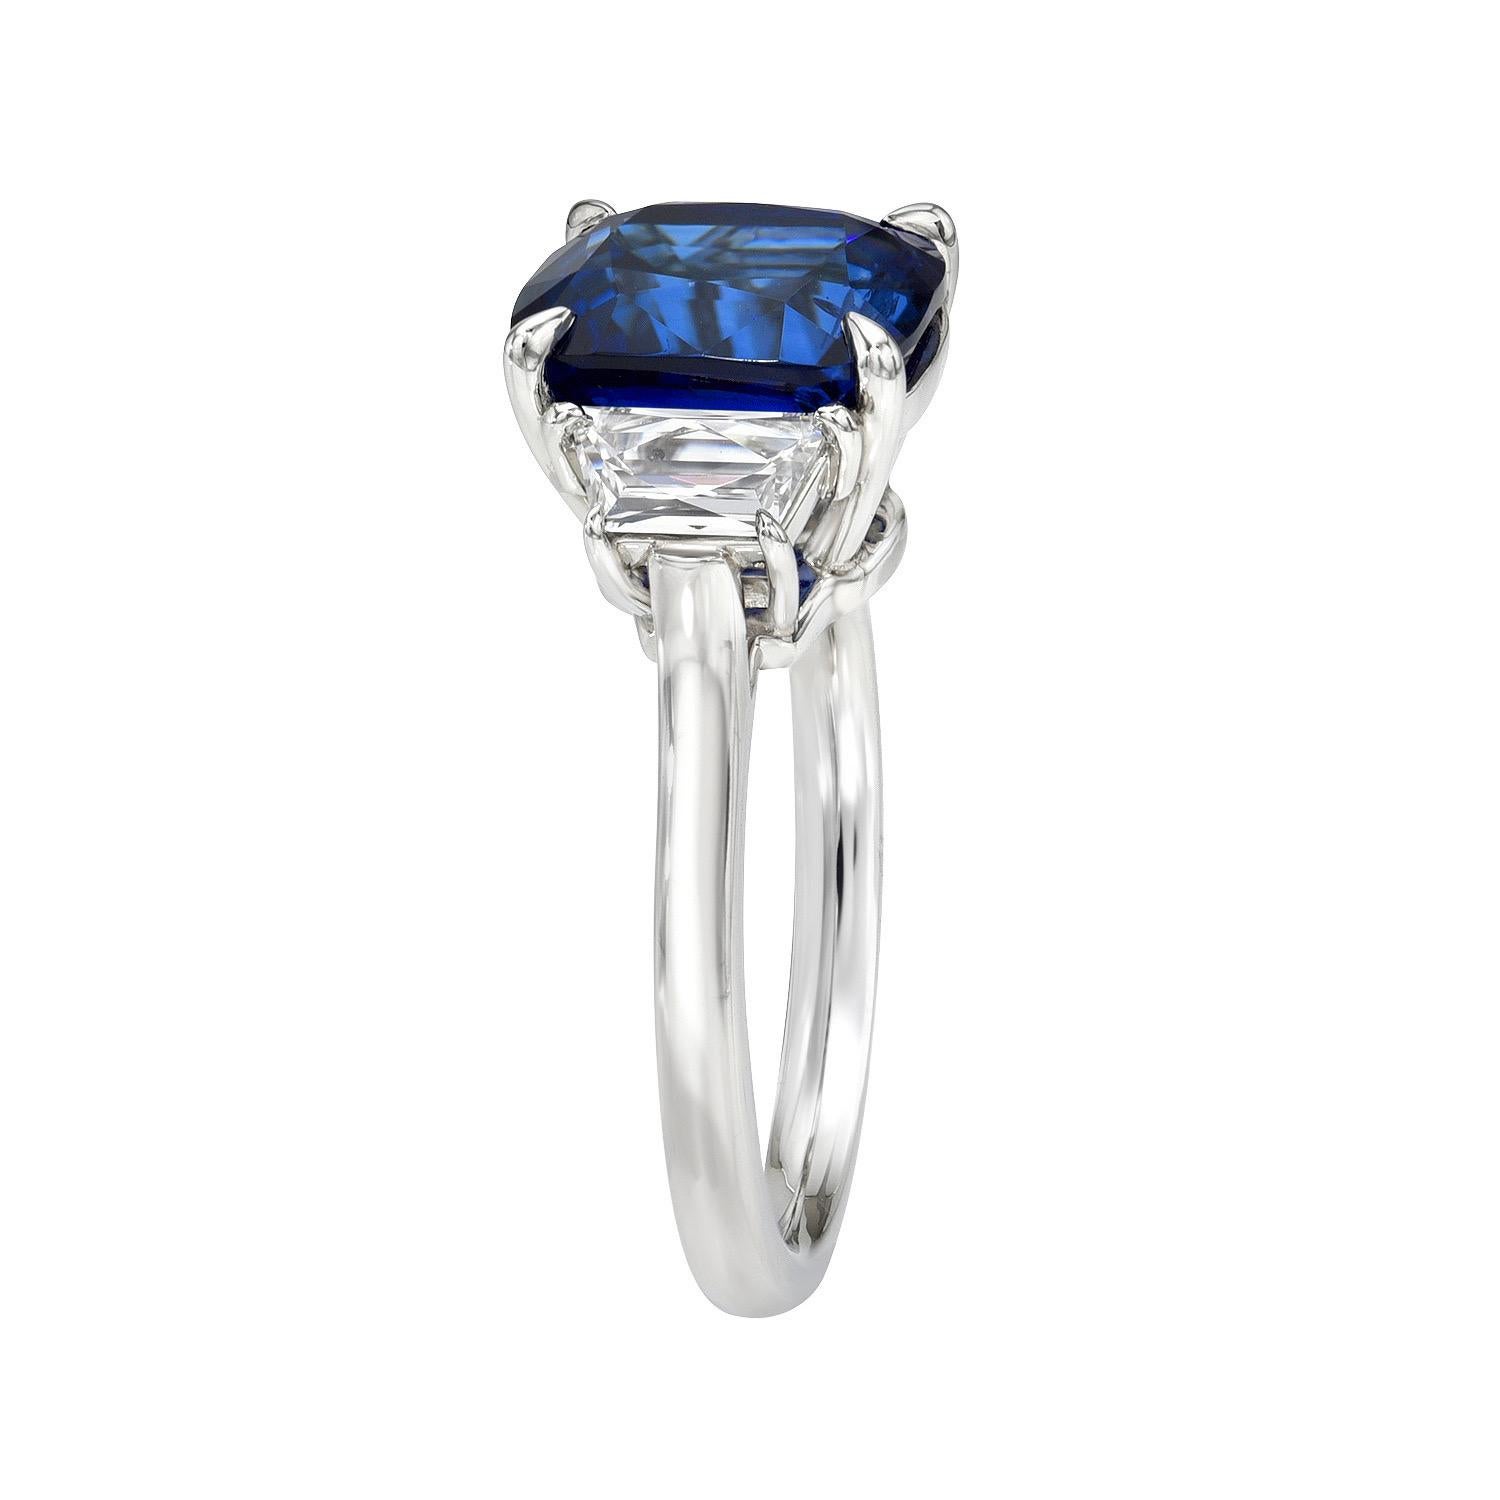 Magnifique saphir bleu royal en coussin de 5,03 carats, bague en platine à trois pierres, ornée d'une paire de diamants trapèzes de taille française de 0,58 carats, de couleur D-E et de pureté VS1.
Taille 6. Le redimensionnement est gratuit sur